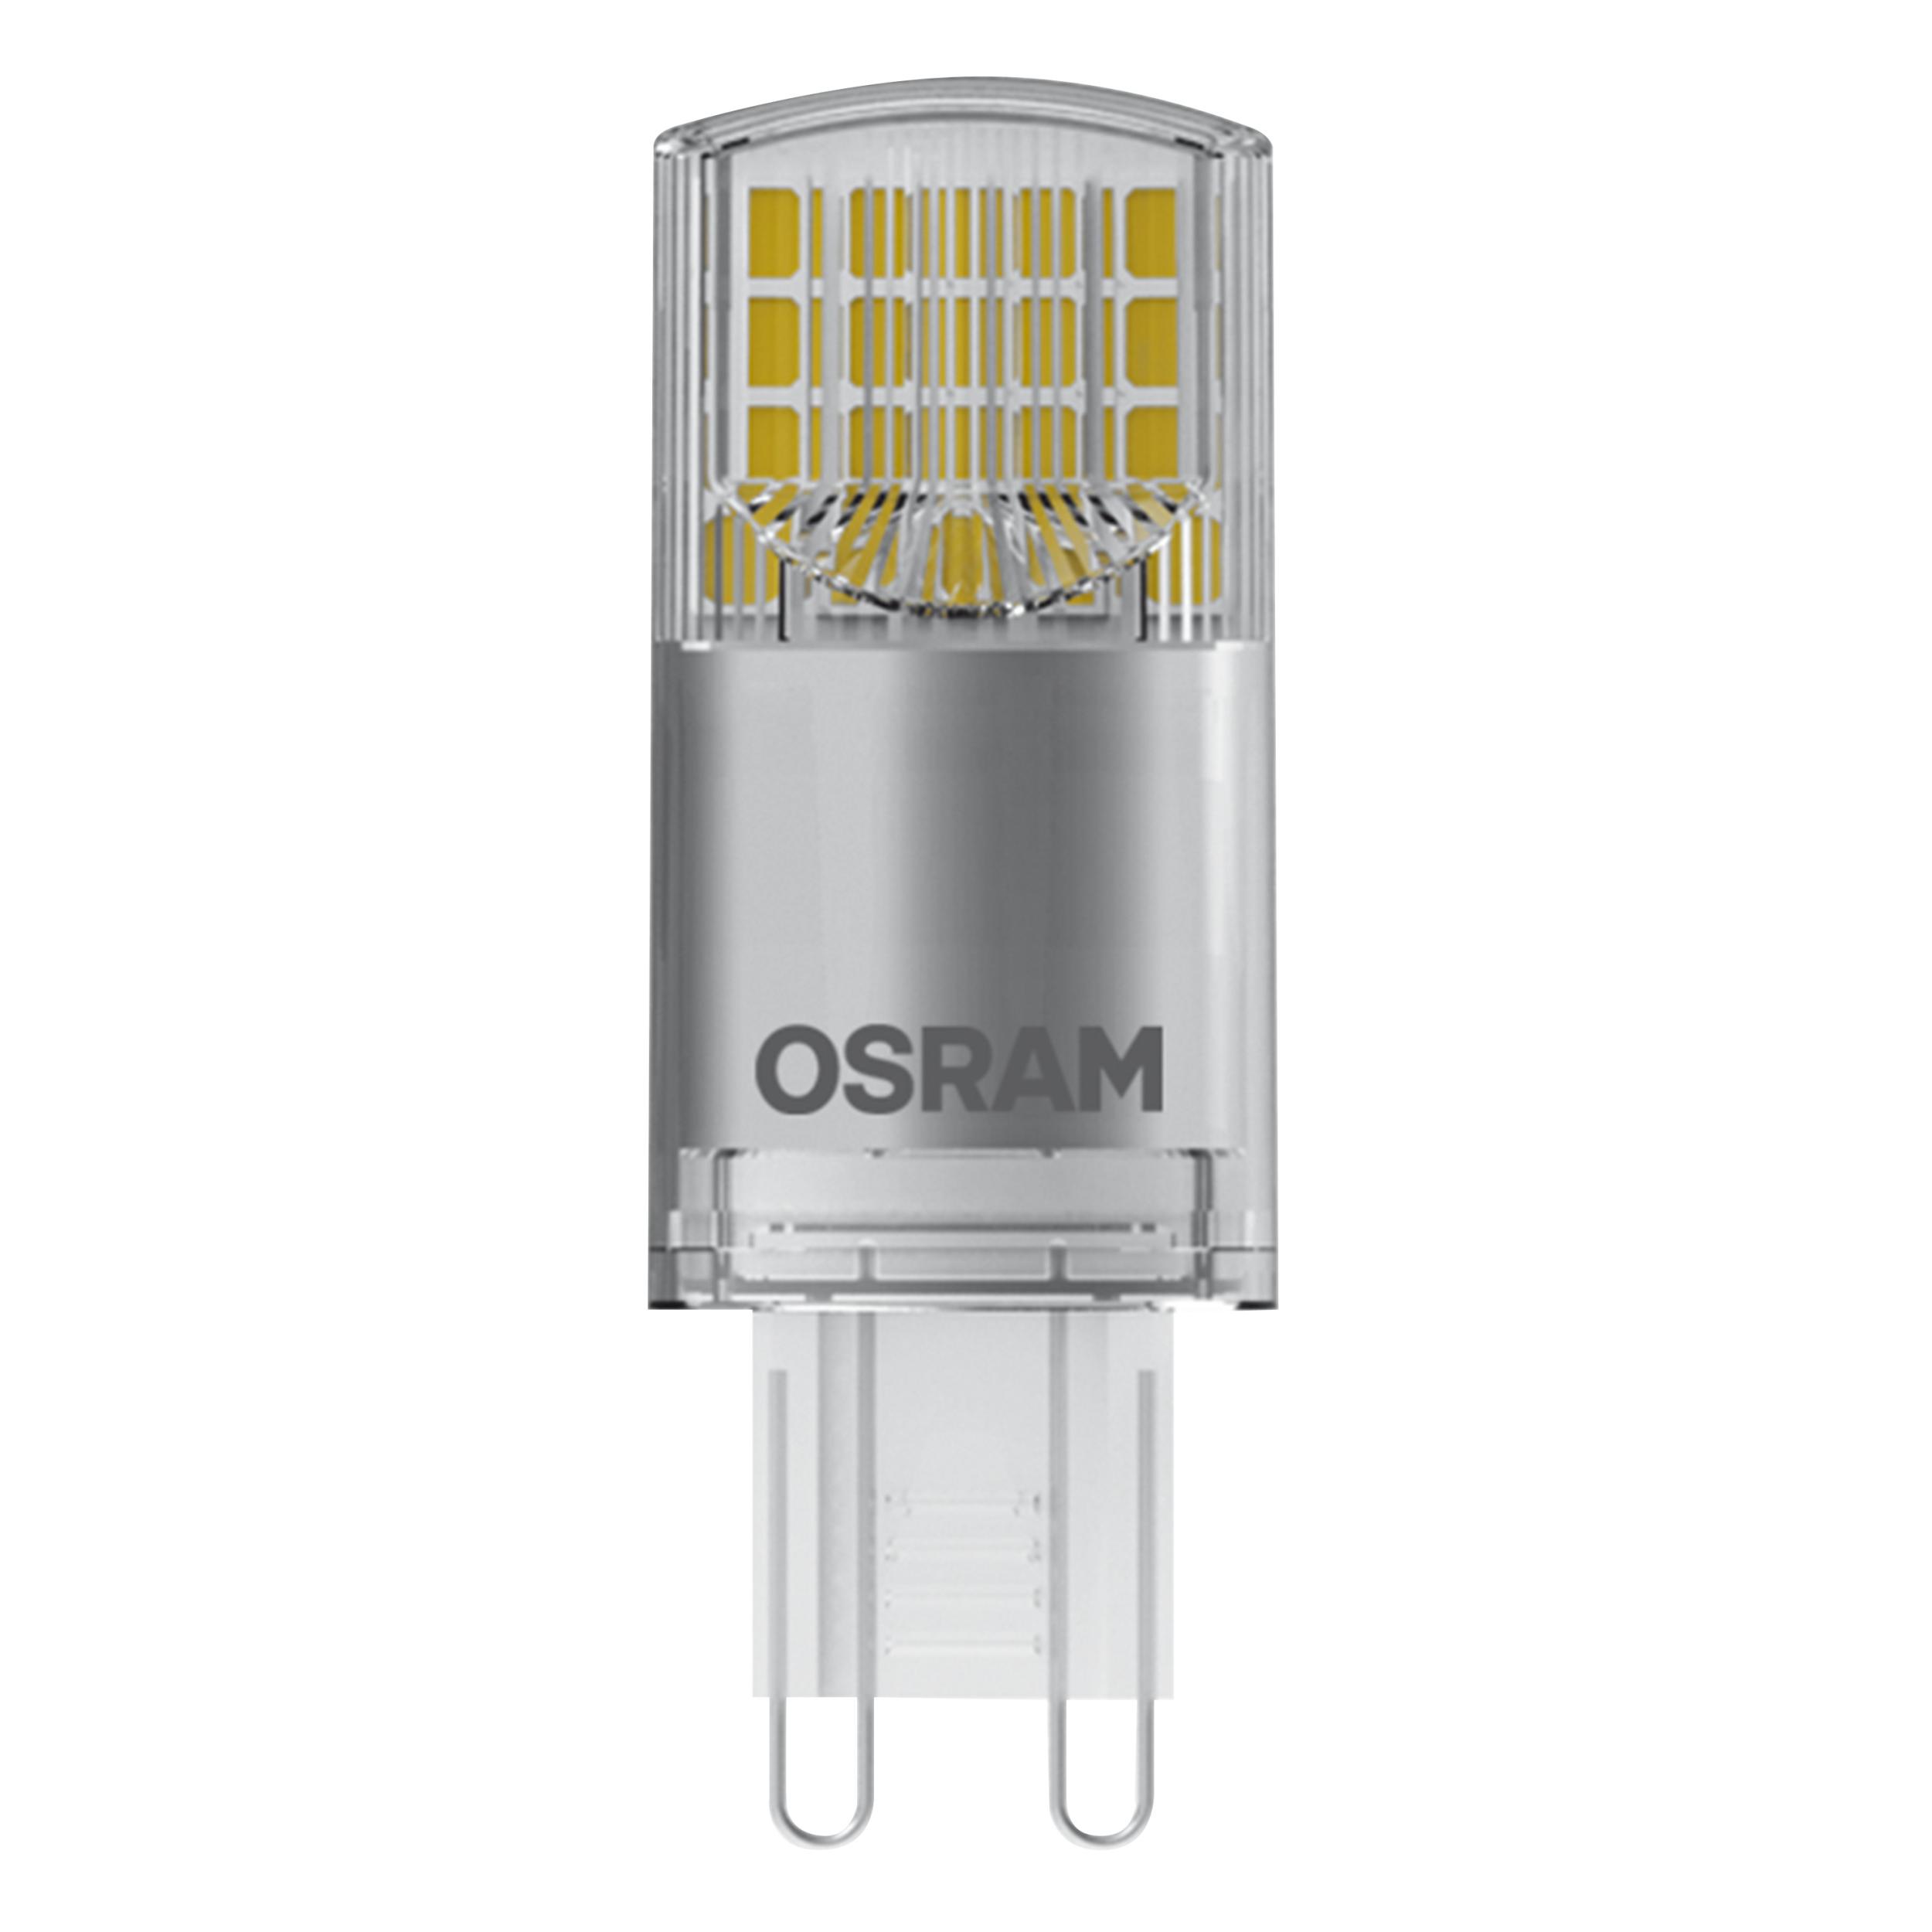 Osram OSRAM LED Star PIN G9 230 V (F)